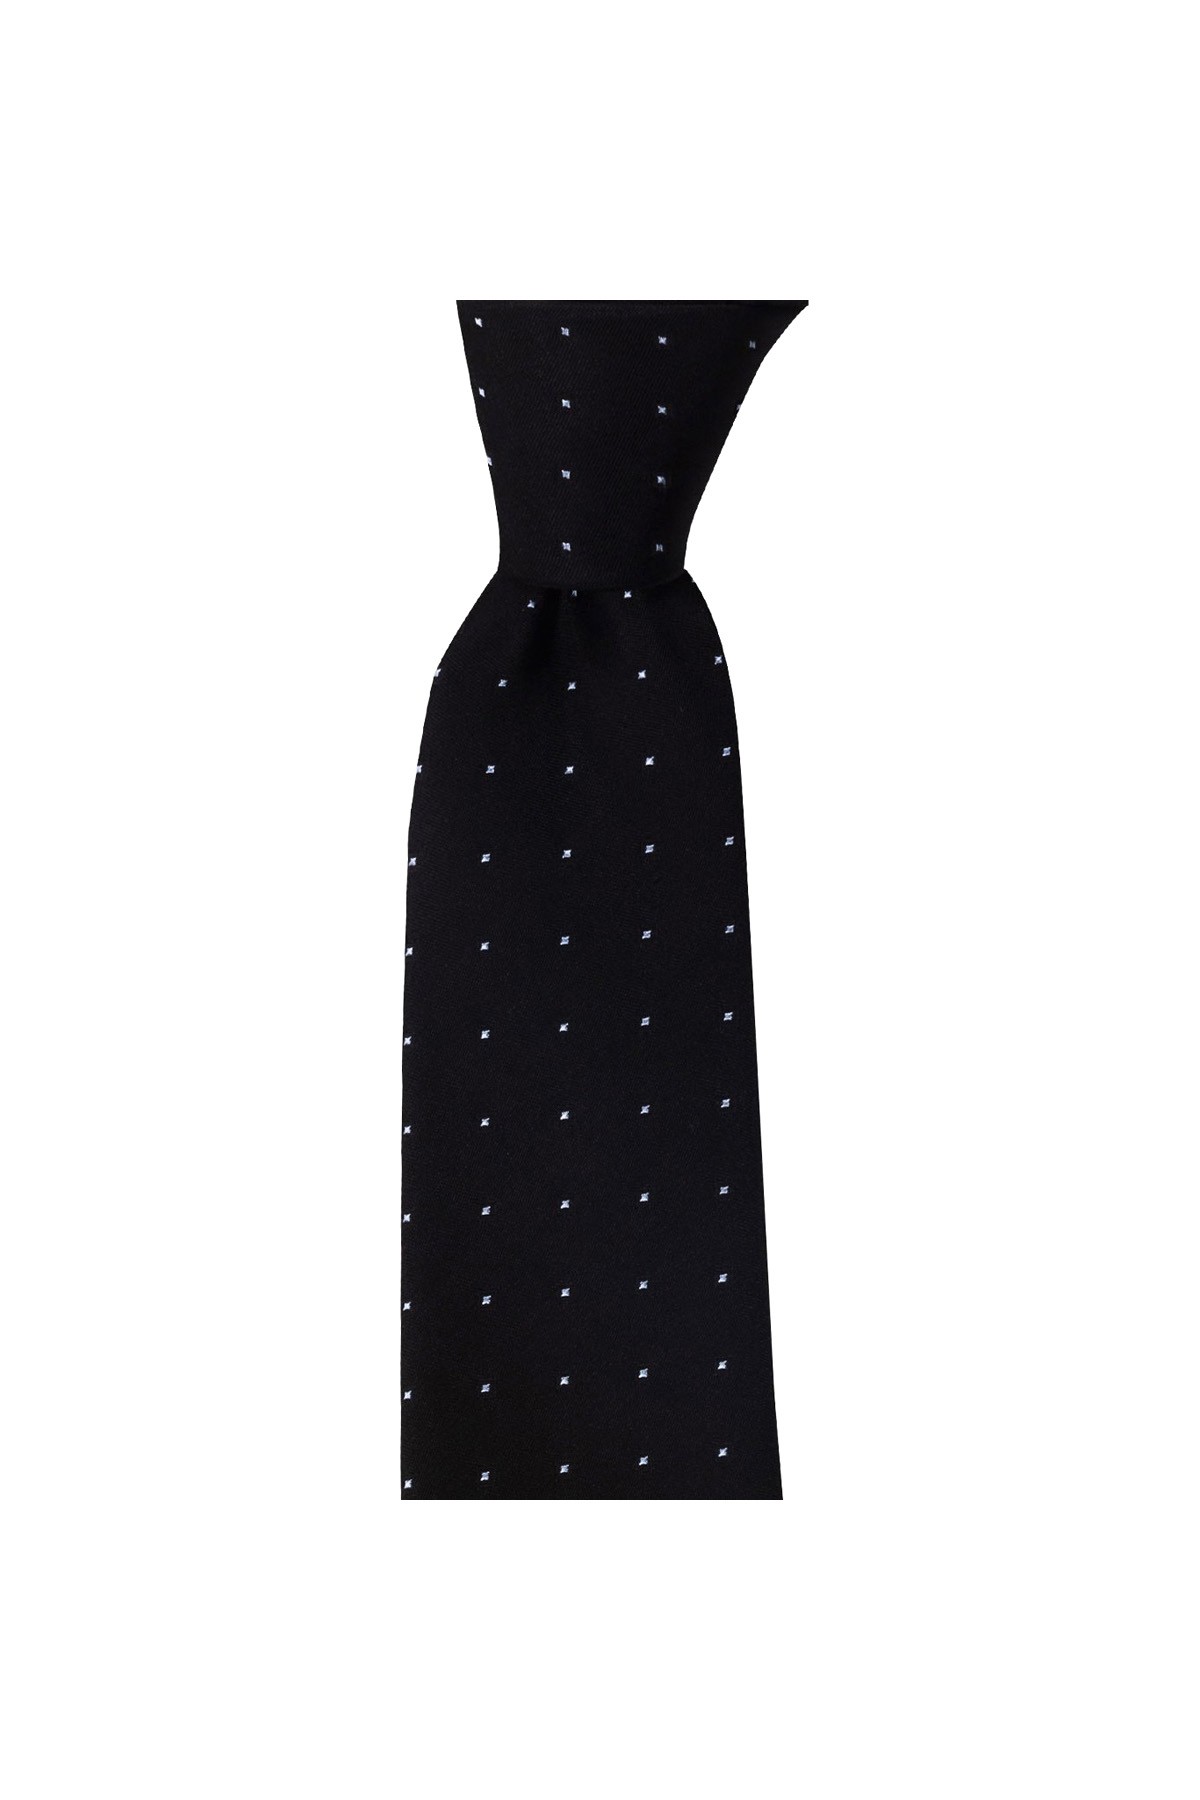 Klasik desenli 7,5 cm genişliğinde ipek kravat - Siyah